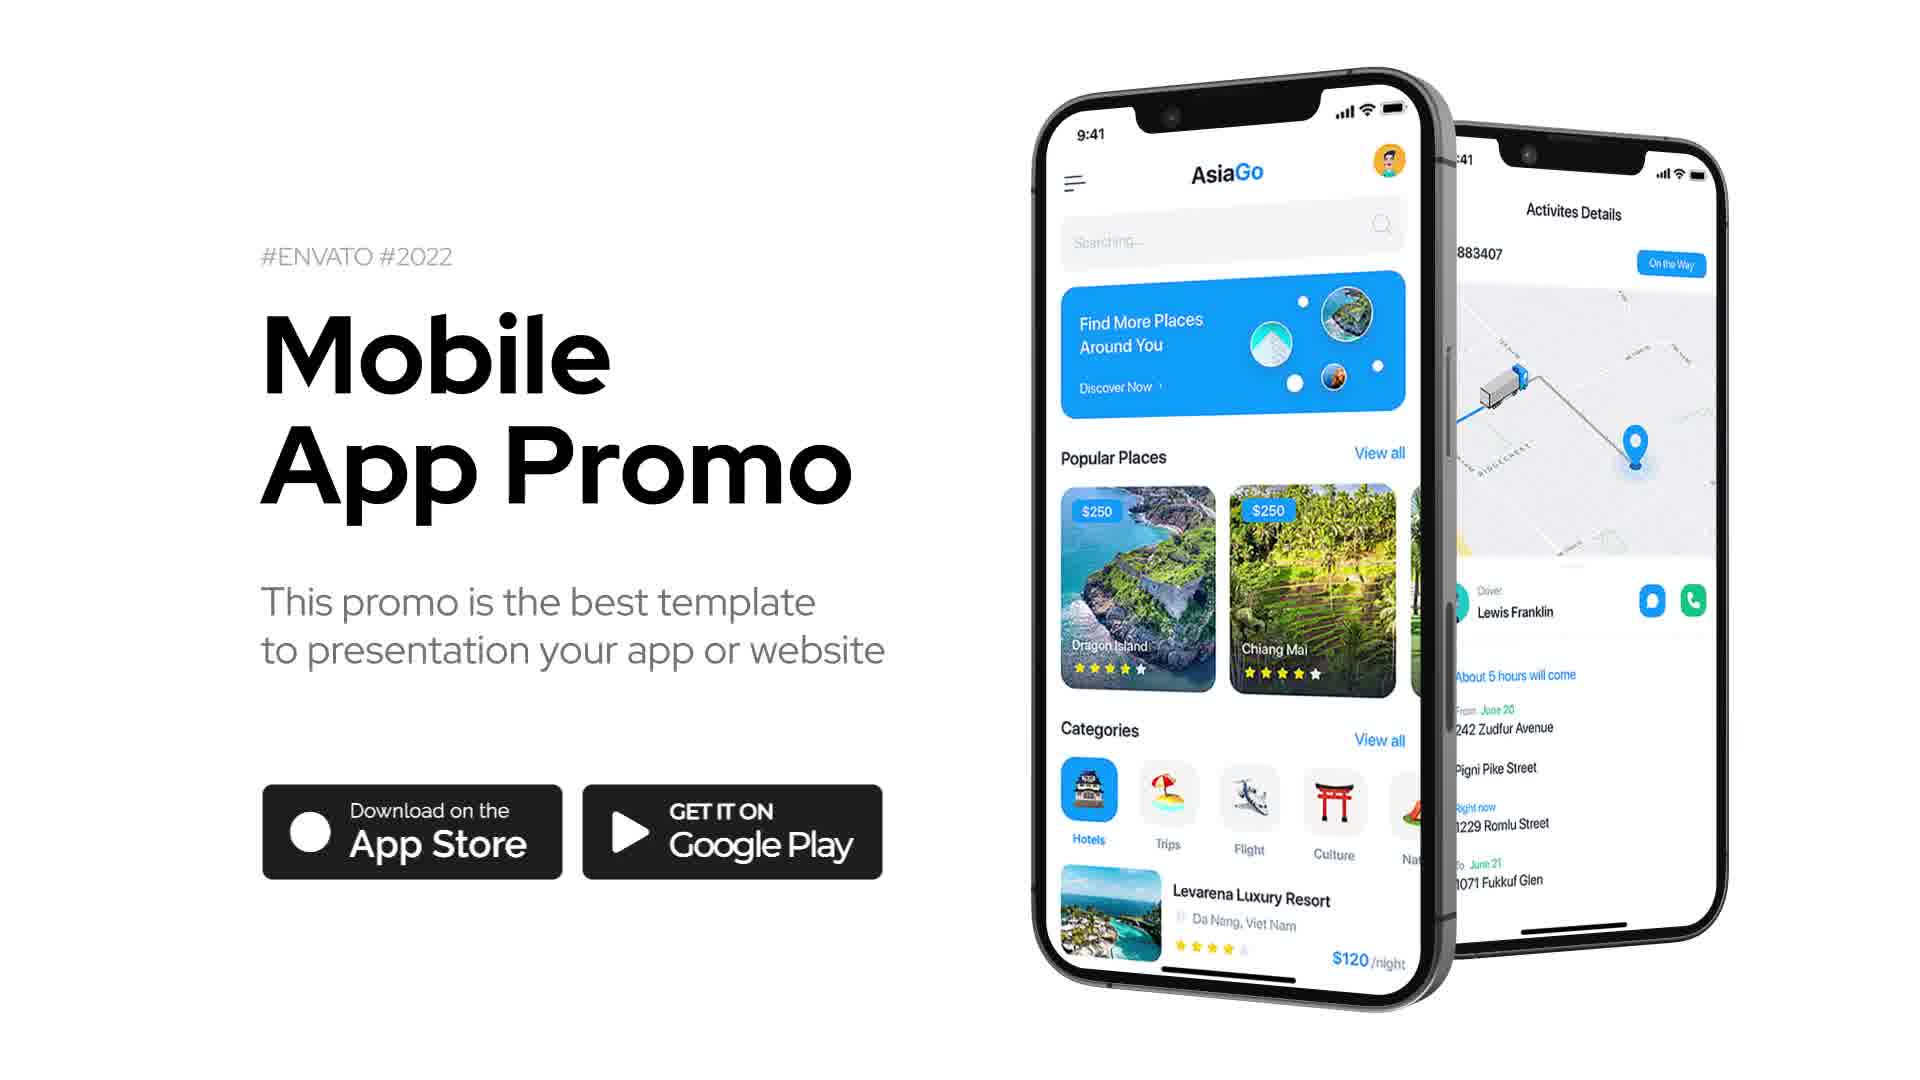 Mobile App Promo for Premiere Pro Videohive 38495584 Premiere Pro Image 13